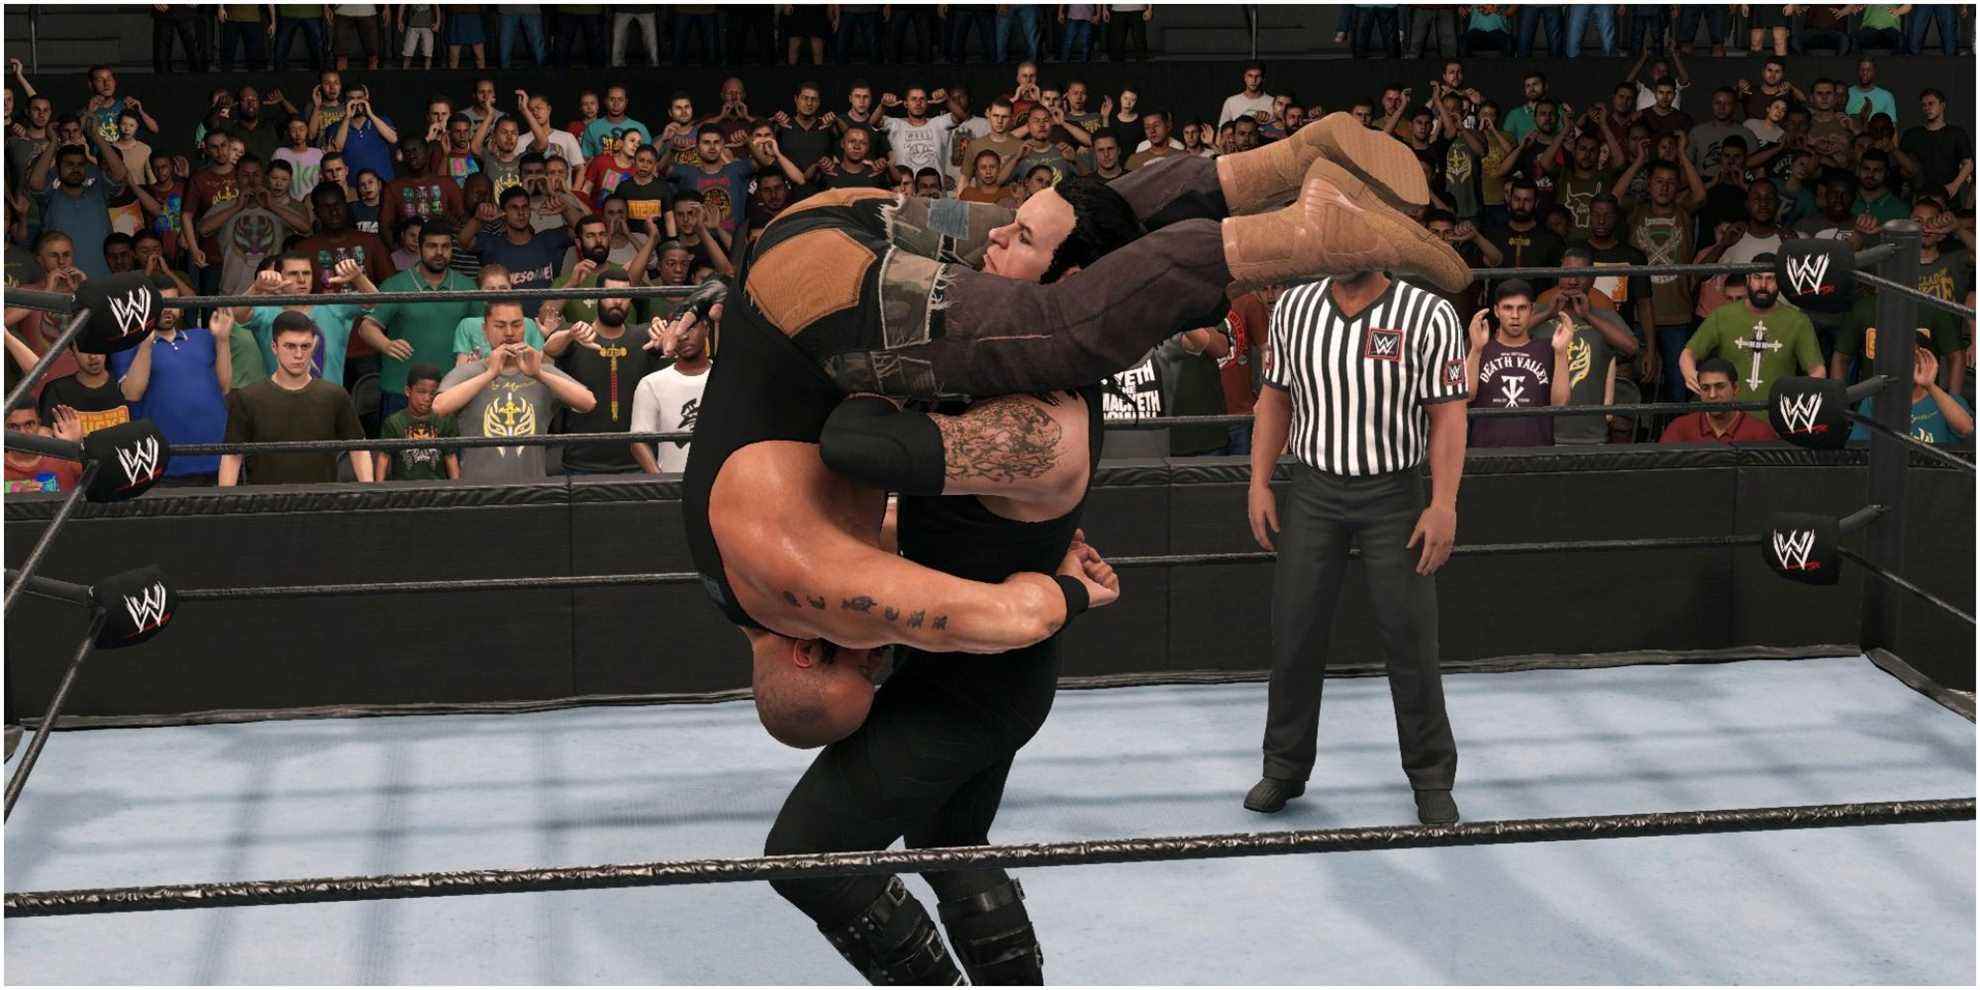 Pierre tombale rotative WWE 2K22 Undertaker